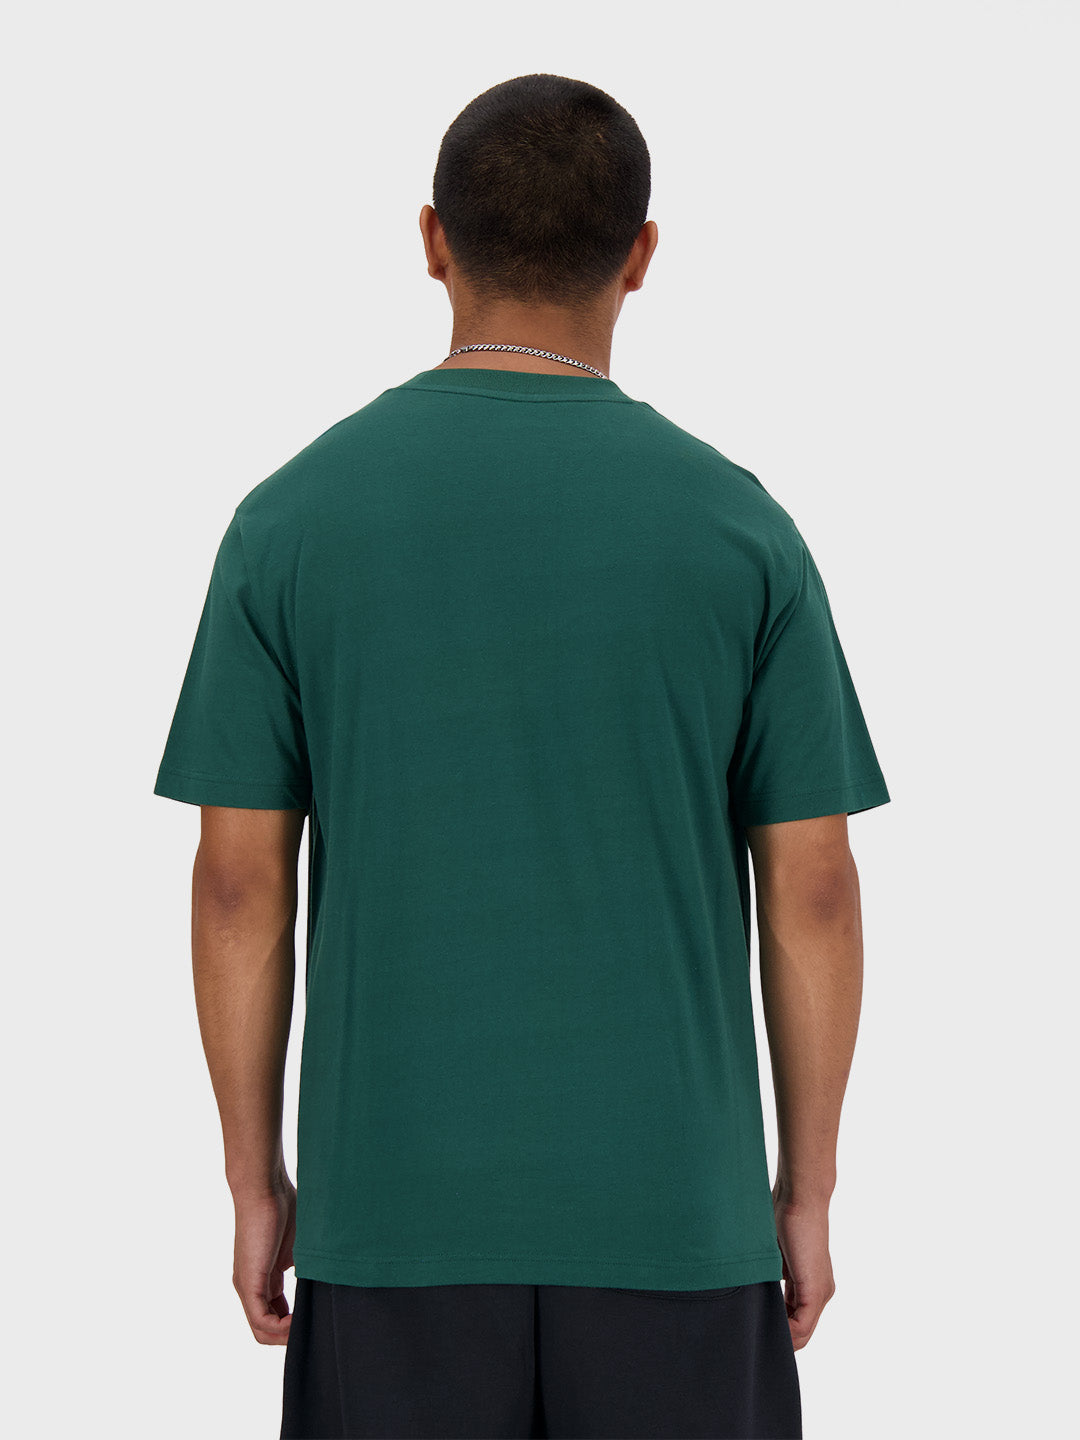 new balance t-shirt green